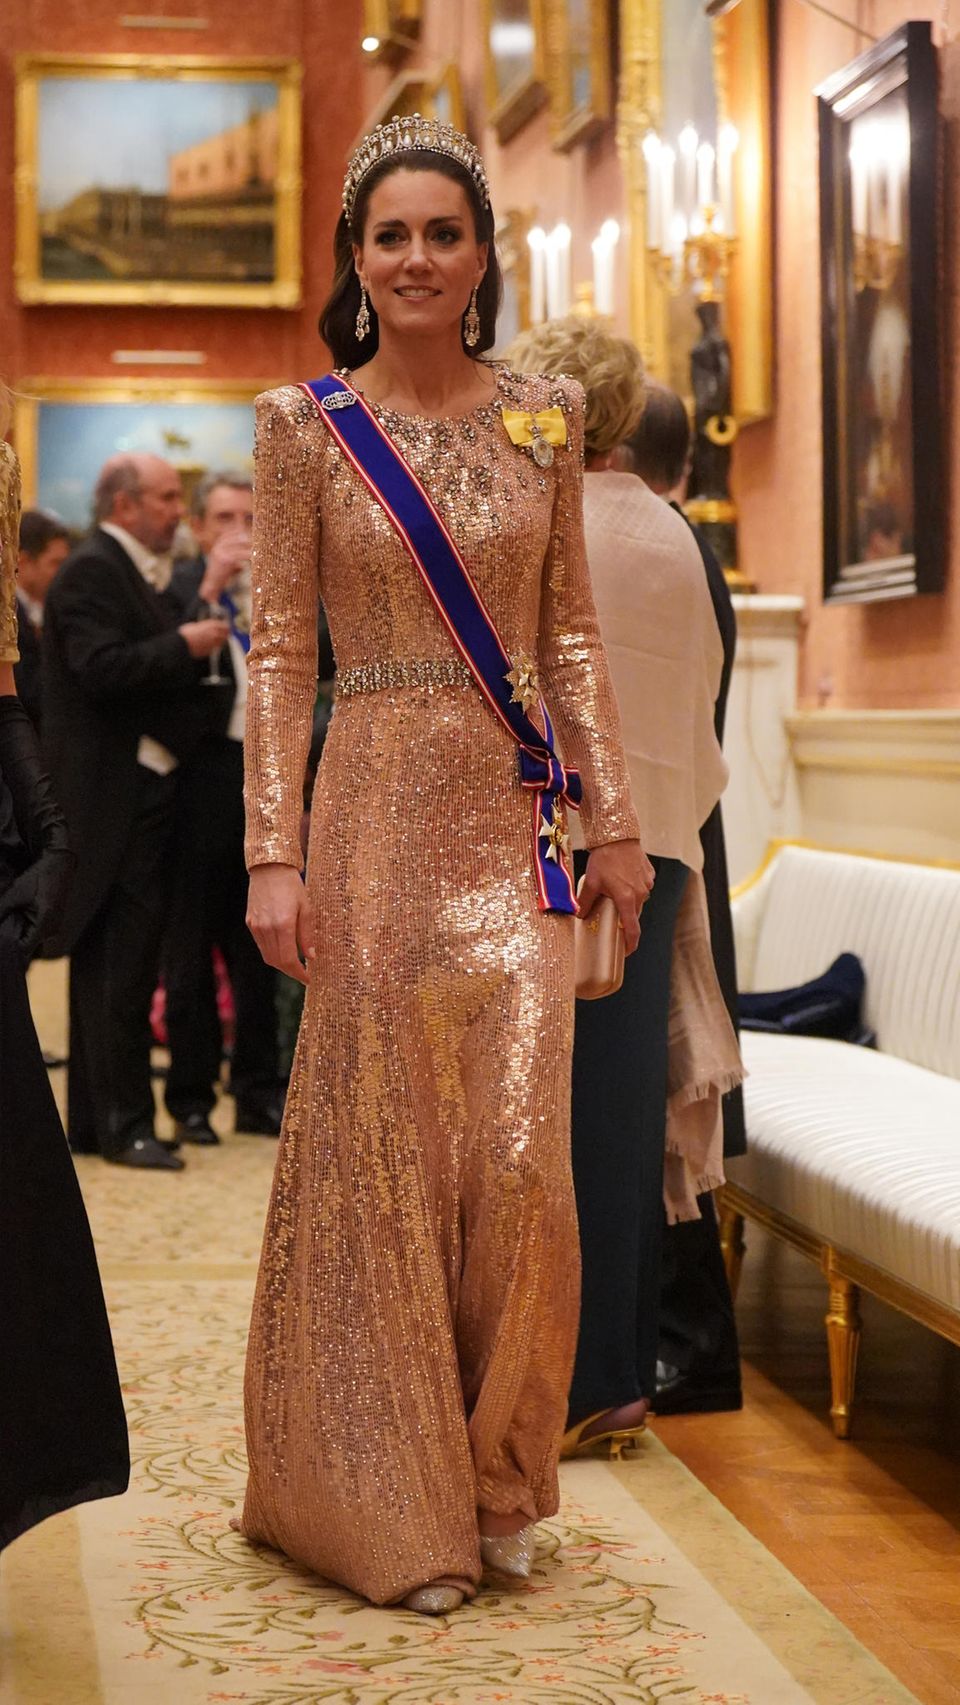 Beim Empfang für das Diplomatische Corps im Buckingham Palace strahlt Catherine, Prinzessin von Wales, mit ihrer Tiara um die Wette. Wie so oft entscheidet sich Kate für den festlichen Anlass für ein lachsfarbenes Paillettenkleid ihrer Lieblingsdesignerin Jenny Packham, das gleiche Kleid, das sie bei der Hochzeit von Kronprinz Hussein von Jordanien im Juni dieses Jahres trug. Doch für Kate ist ein Eye-Catcher nicht genug. Sie begeistert nicht nur mit eleganten Diamantohrringen, sondern auch ihre Schuhe funkeln majestätisch vor sich hin.